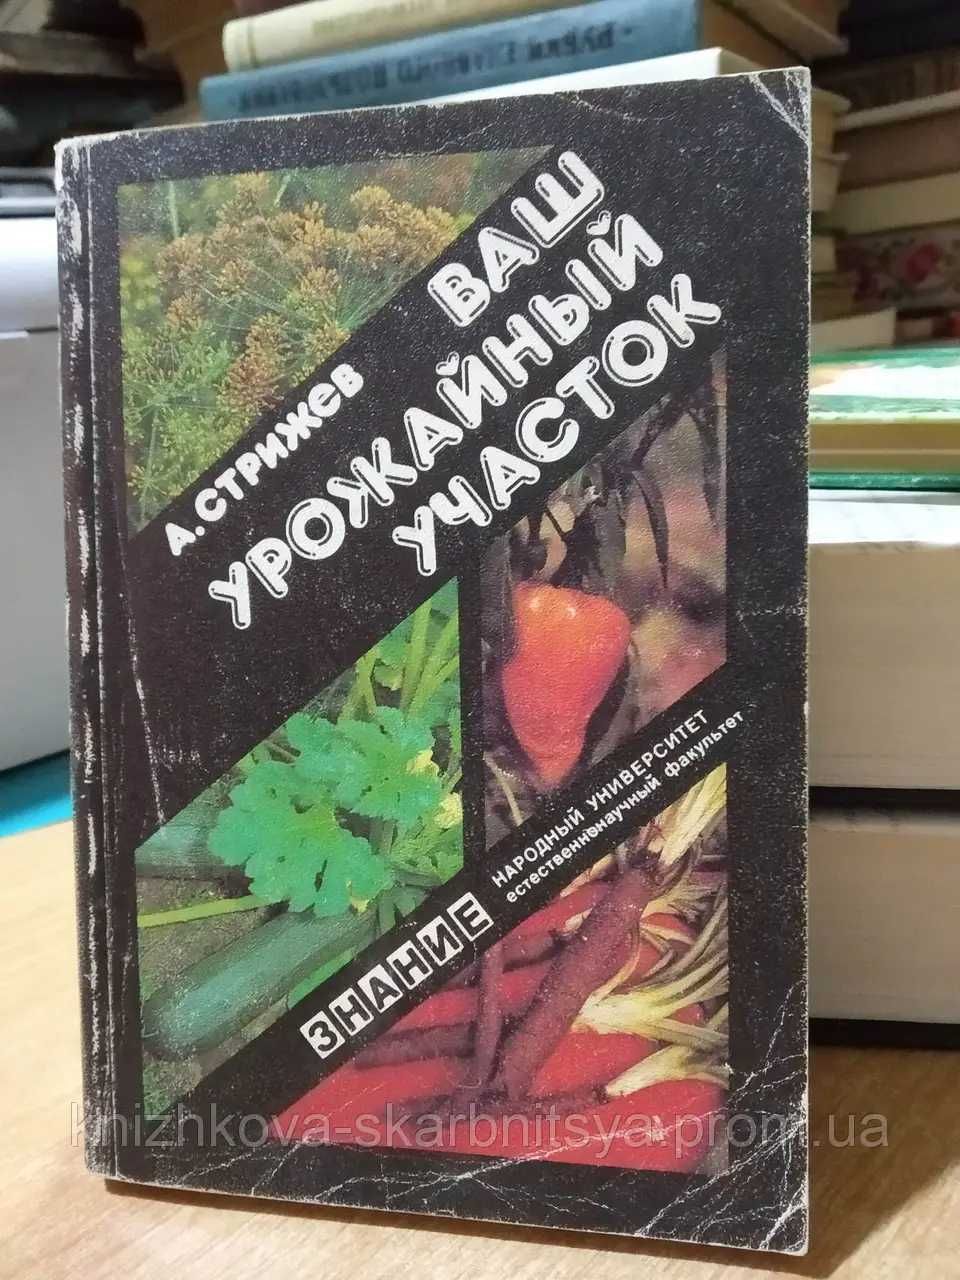 Книга: А.Стрижев "Ваш садовый участок", 1990 г.